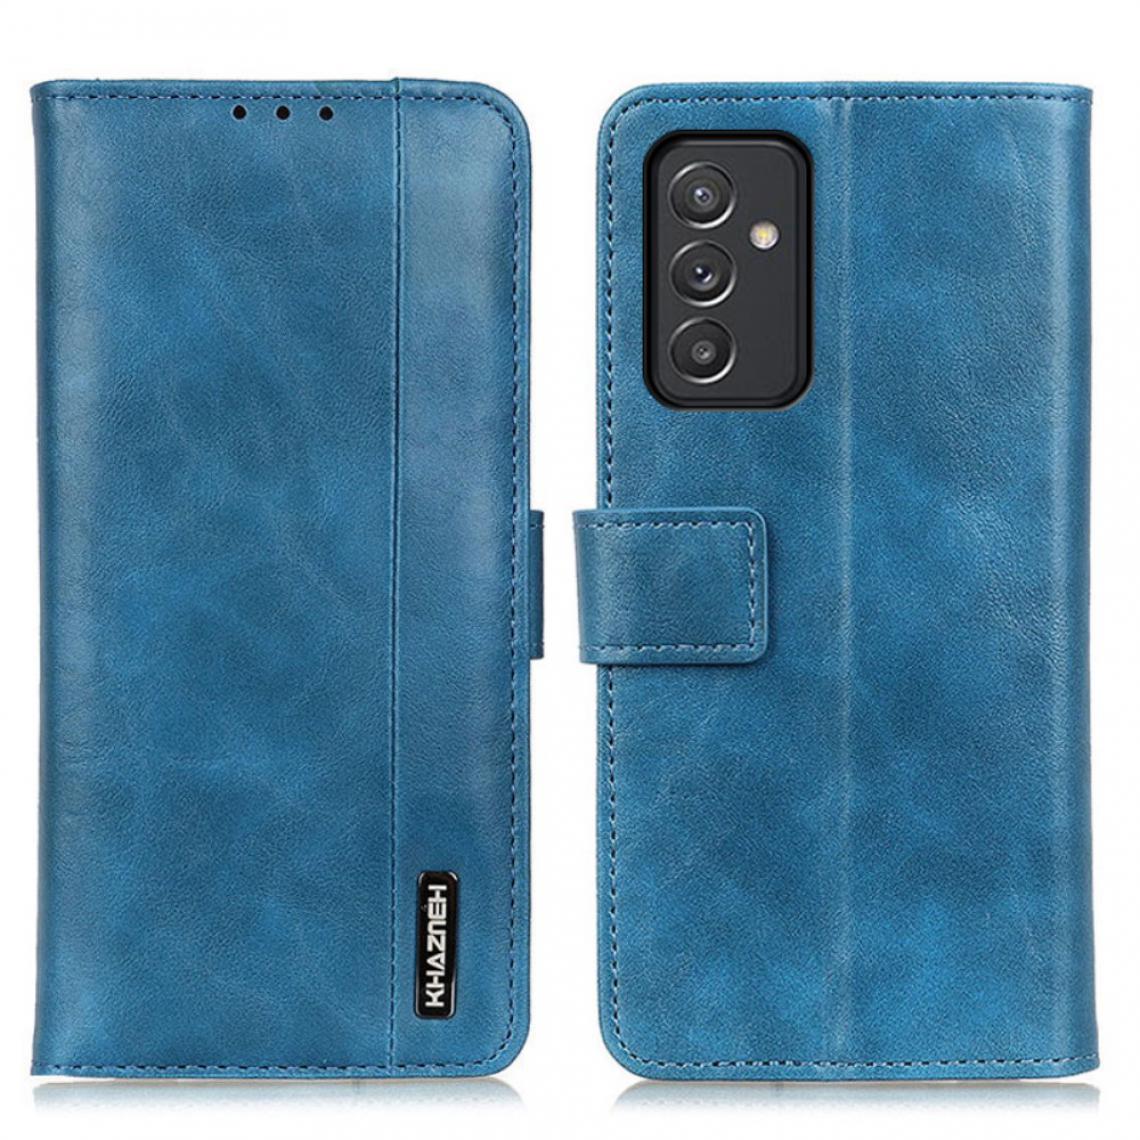 Other - Etui en PU + TPU avec support bleu pour votre Samsung Galaxy A82 5G - Coque, étui smartphone